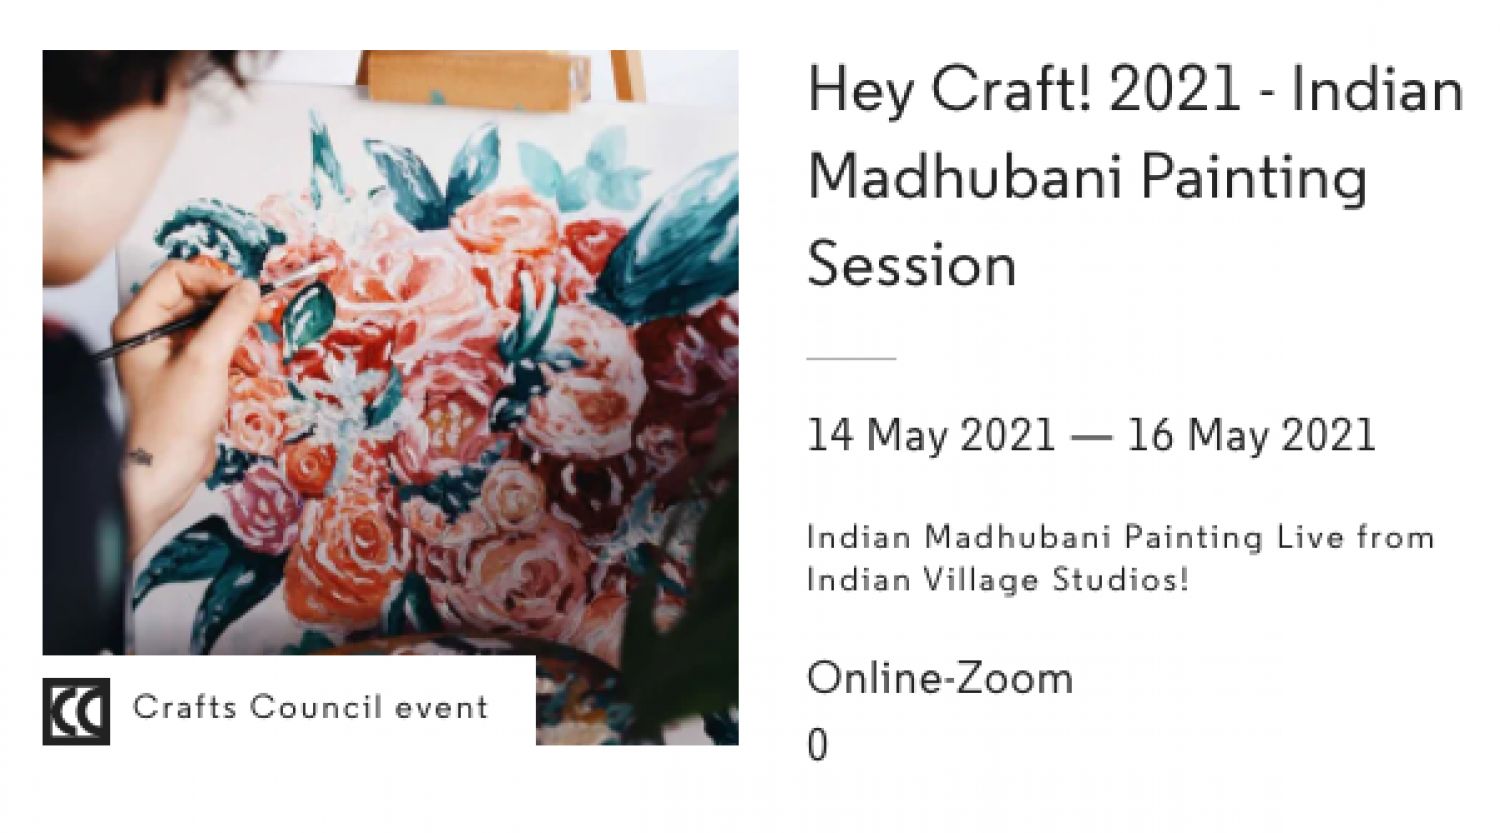 Hey Craft!2021 - Indian Madhubani Painting Session